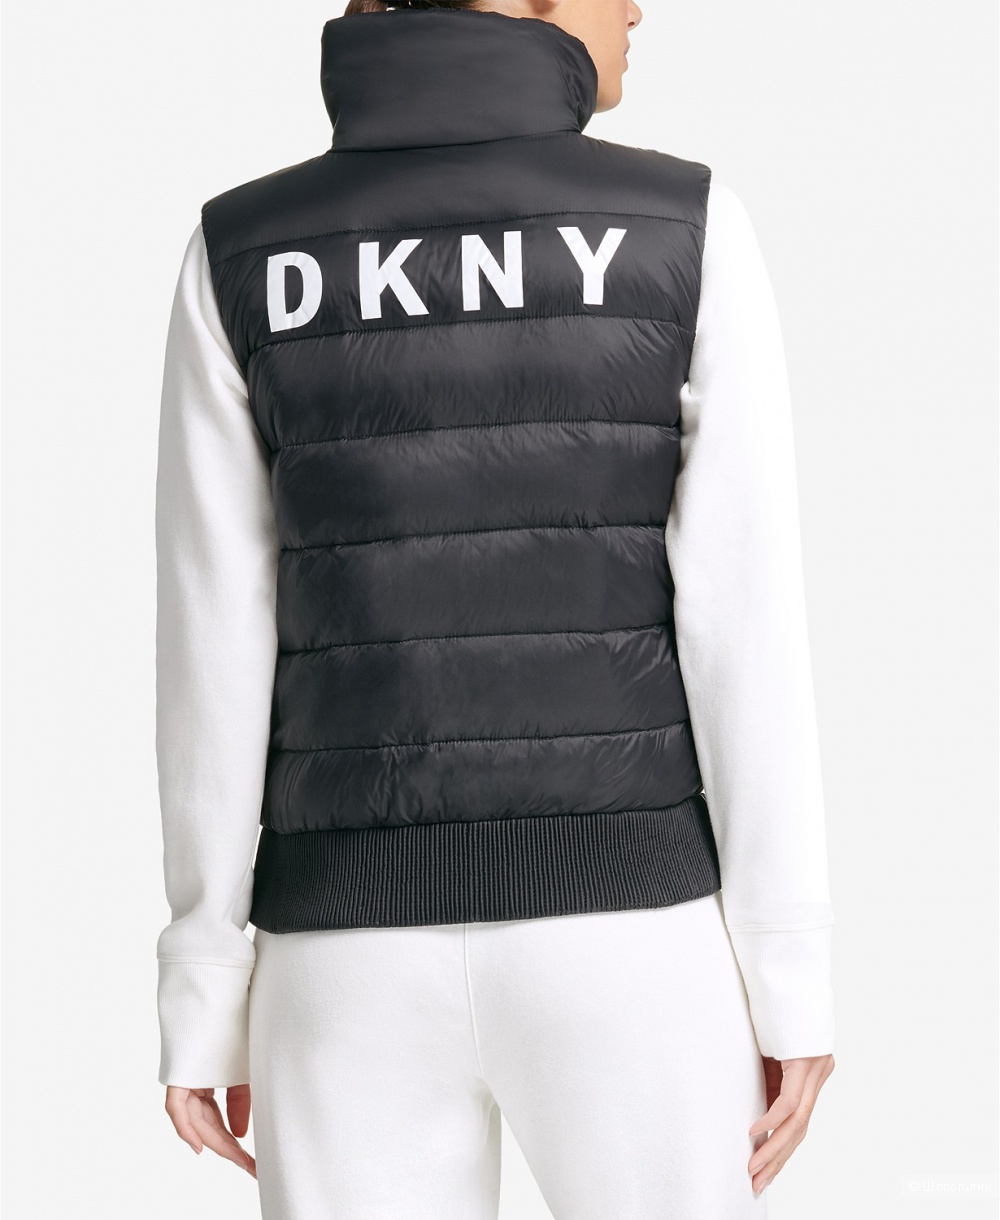 Жилет DKNY разм. US - L (росс. 48-50)